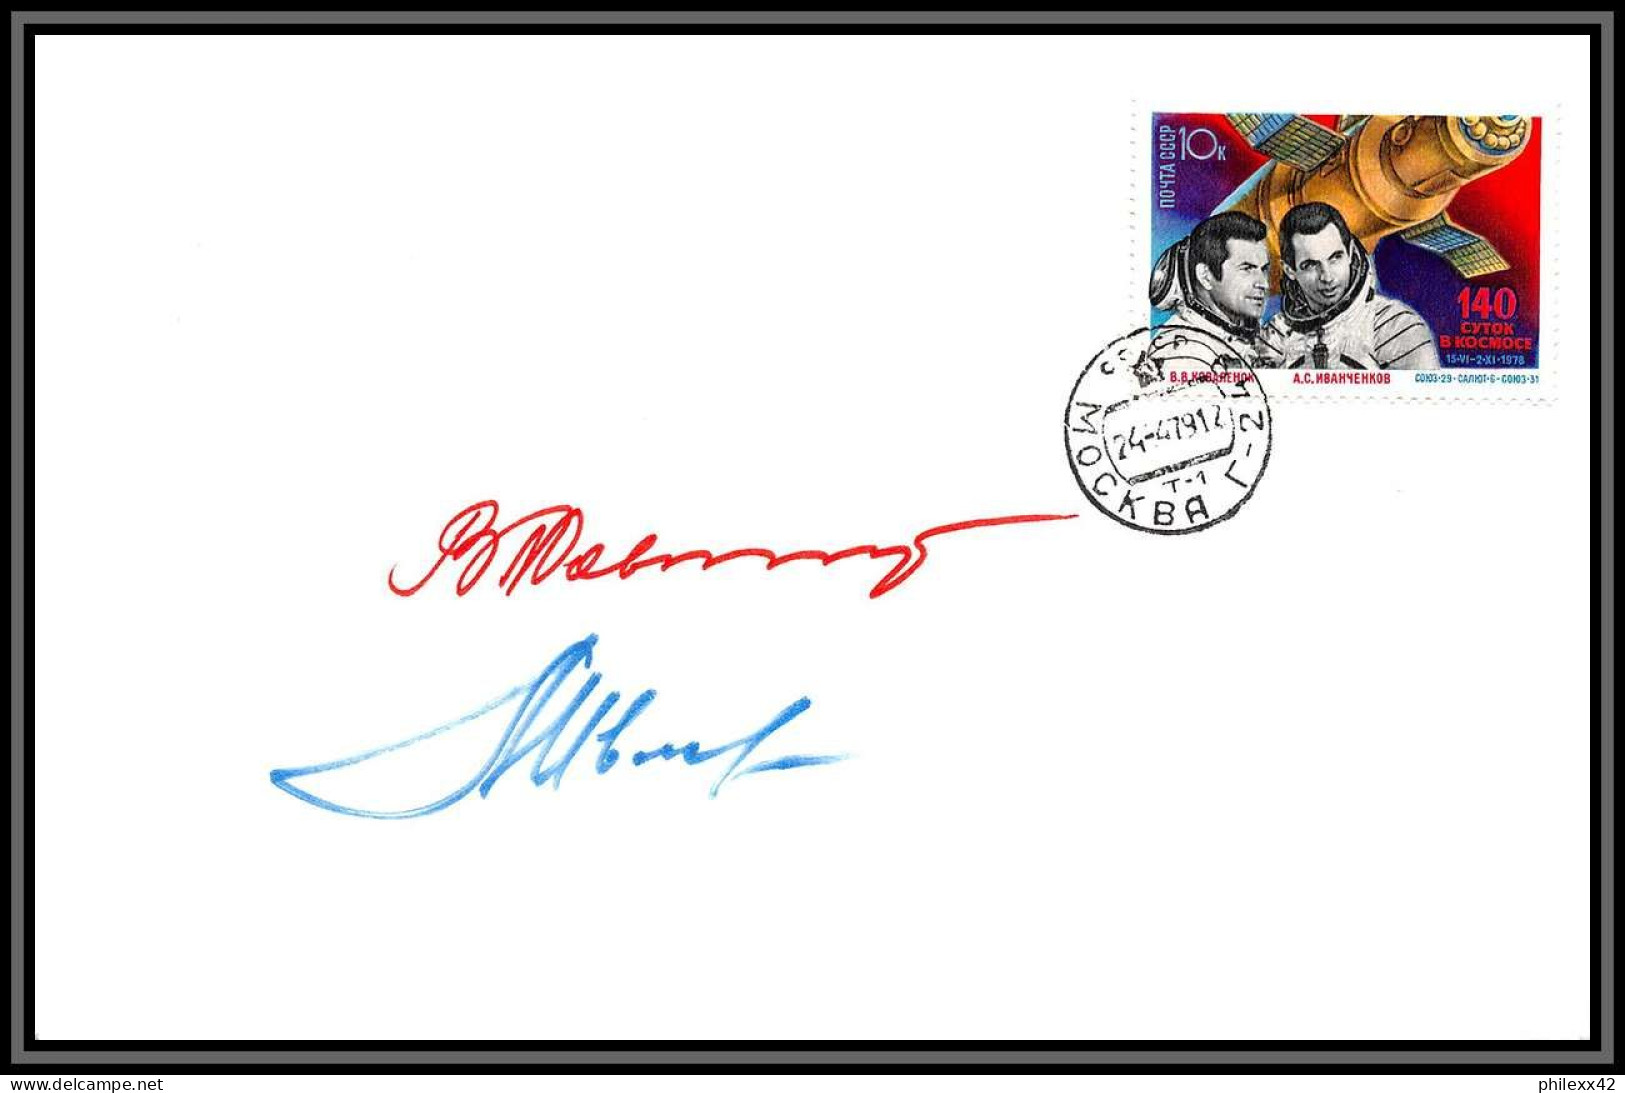 3500X Espace Space Lettre Cover Signé Signed Autograph Ivanchenkov Cosmonauts Russia Urss USSR 24/4/1979 Soyuz Soyouz 31 - Russie & URSS